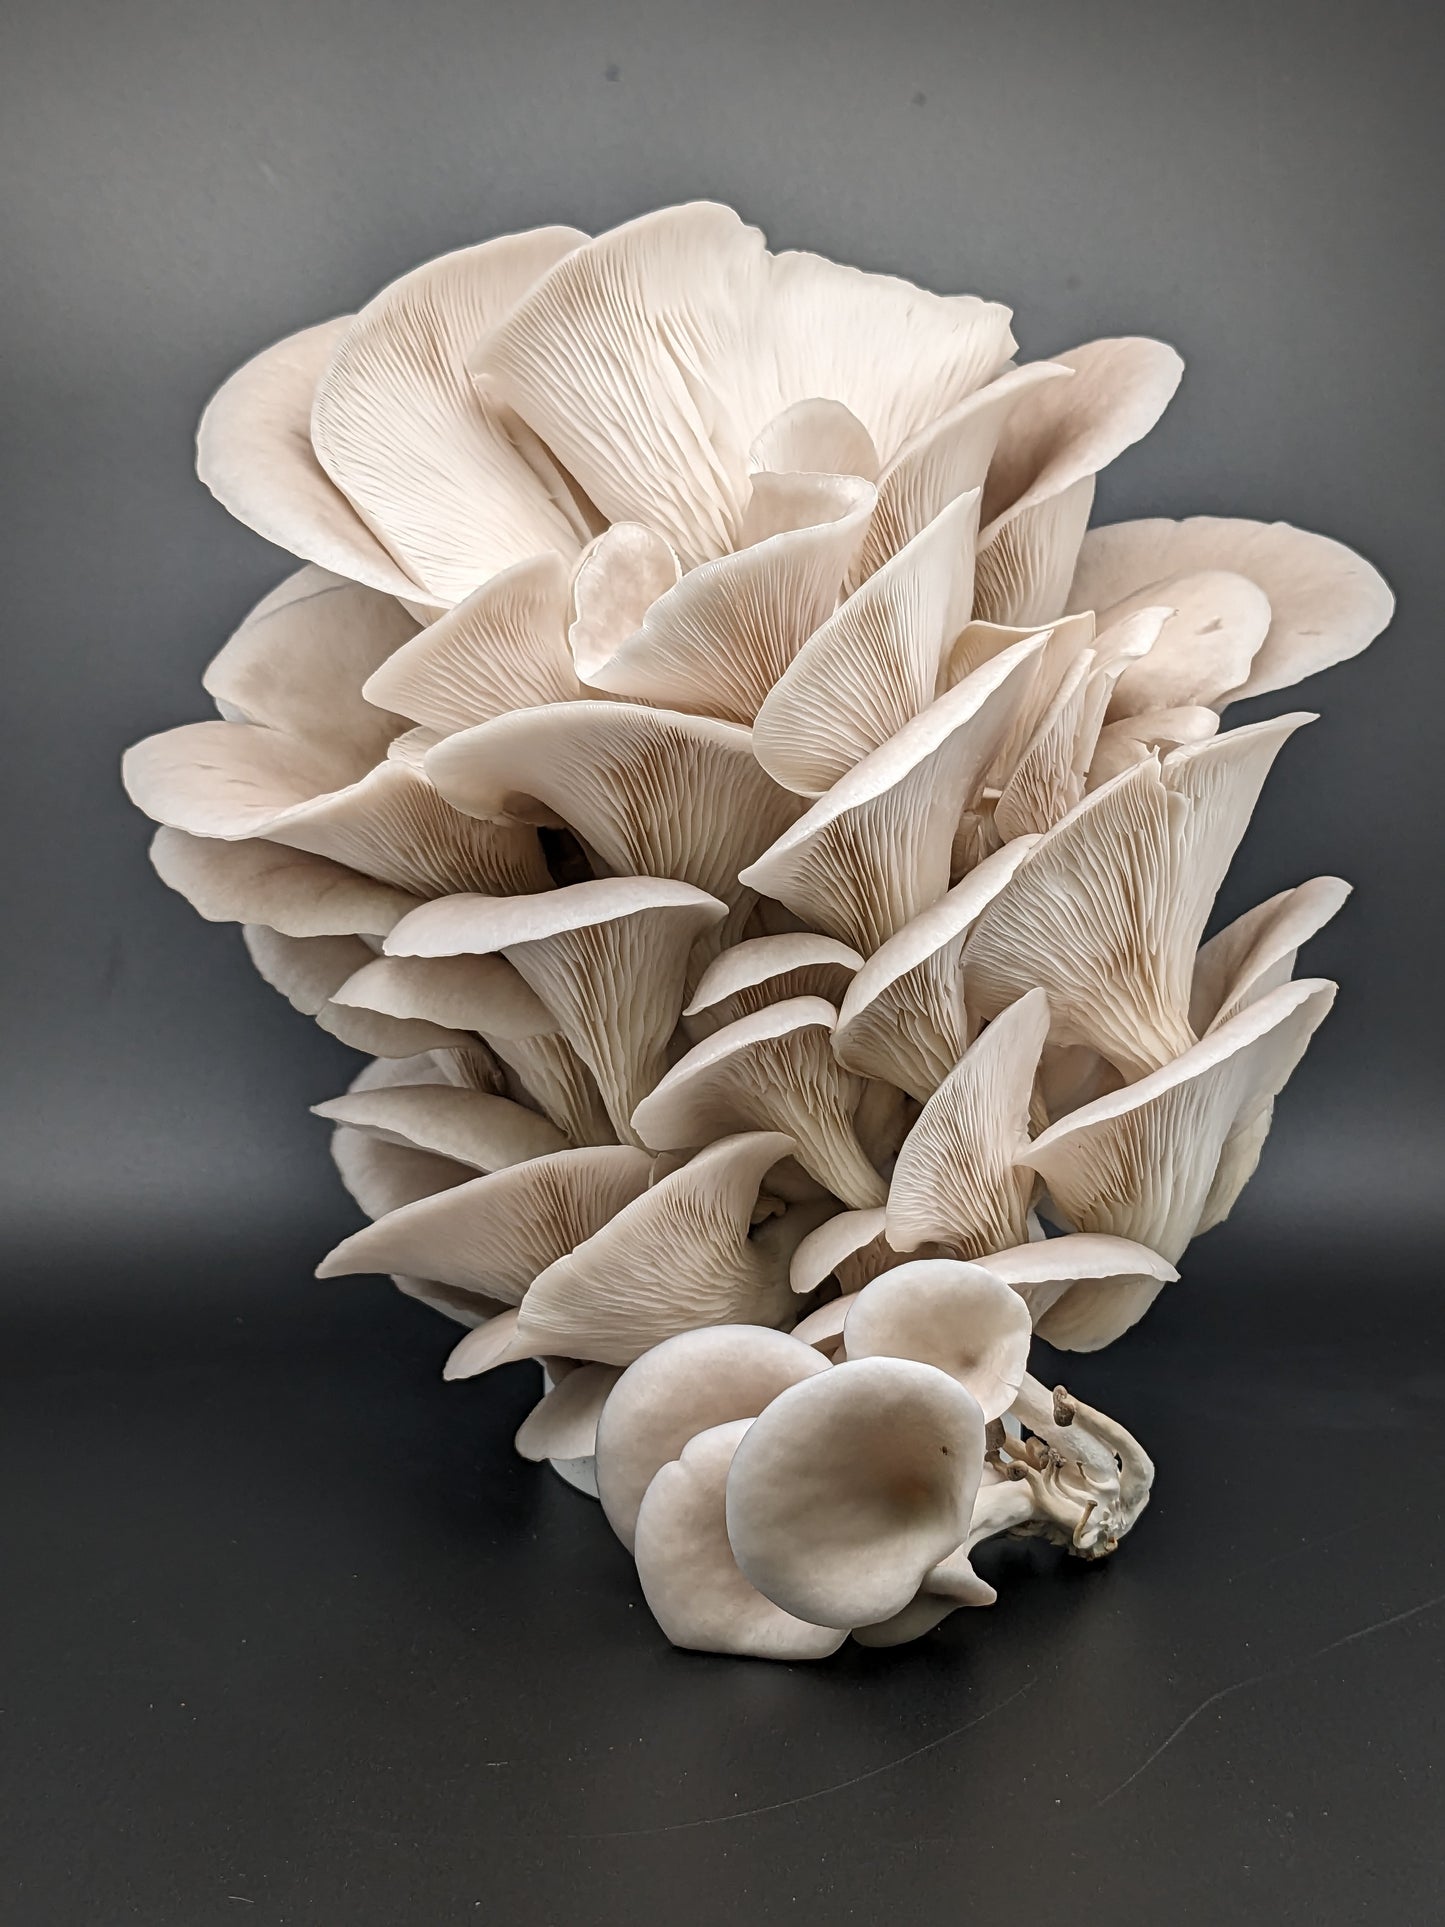 DIY mushroom kit